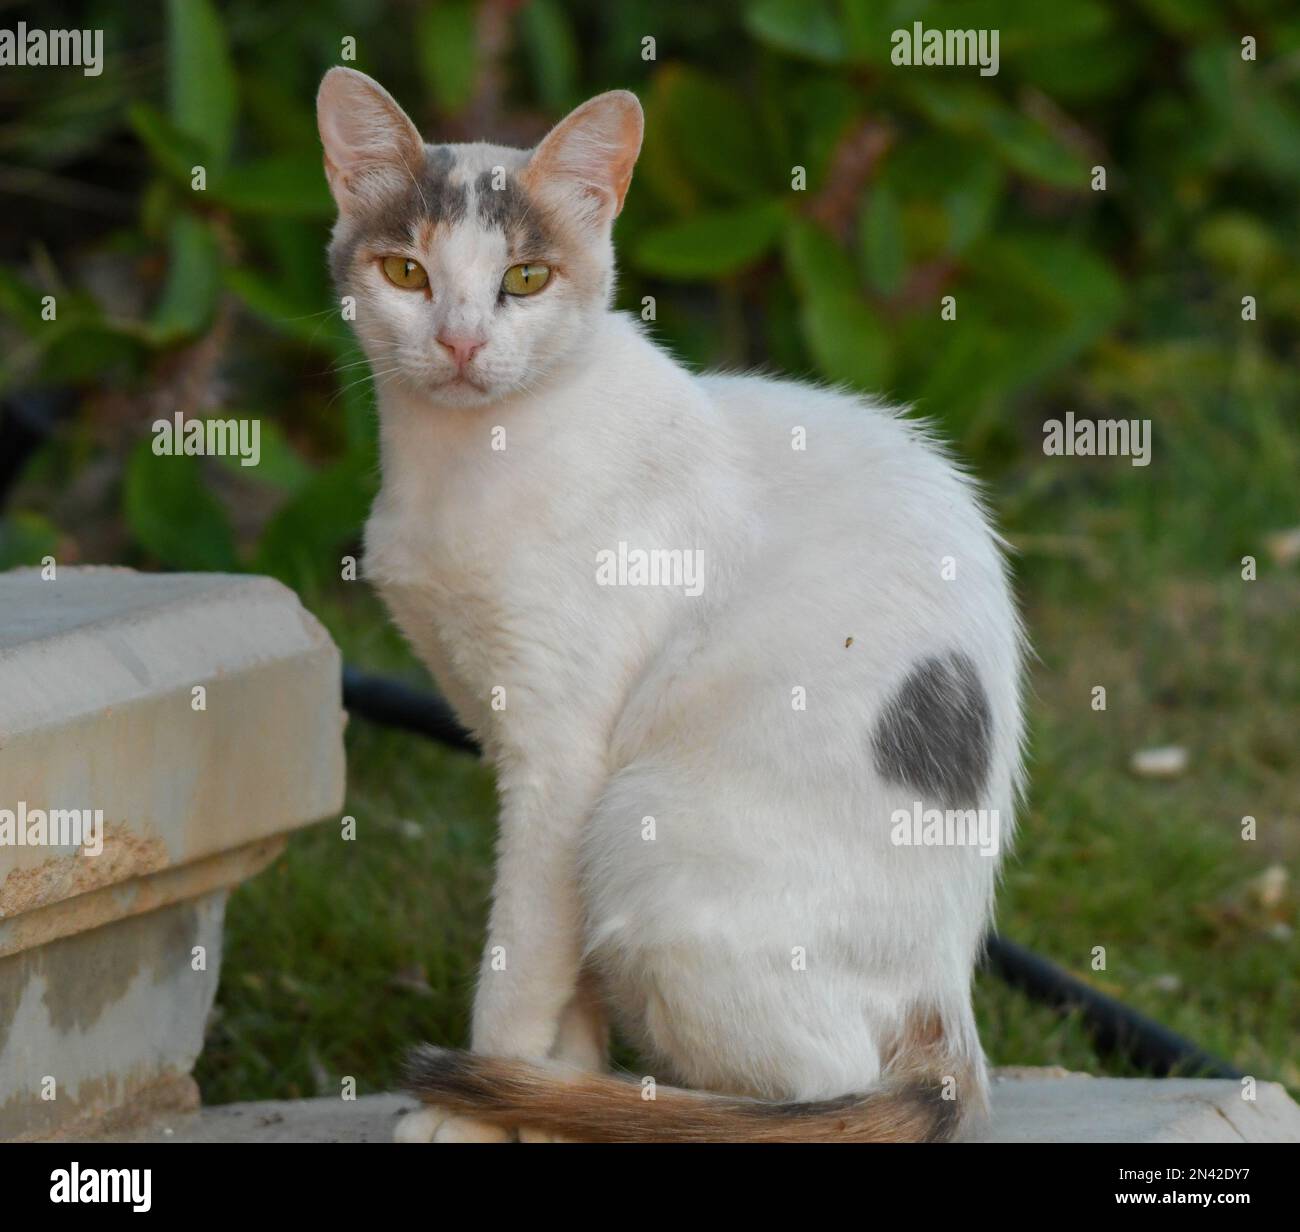 Retrato de primer plano de un gato de ojos verdes mirando hacia la cámara con el fondo borroso Foto de stock